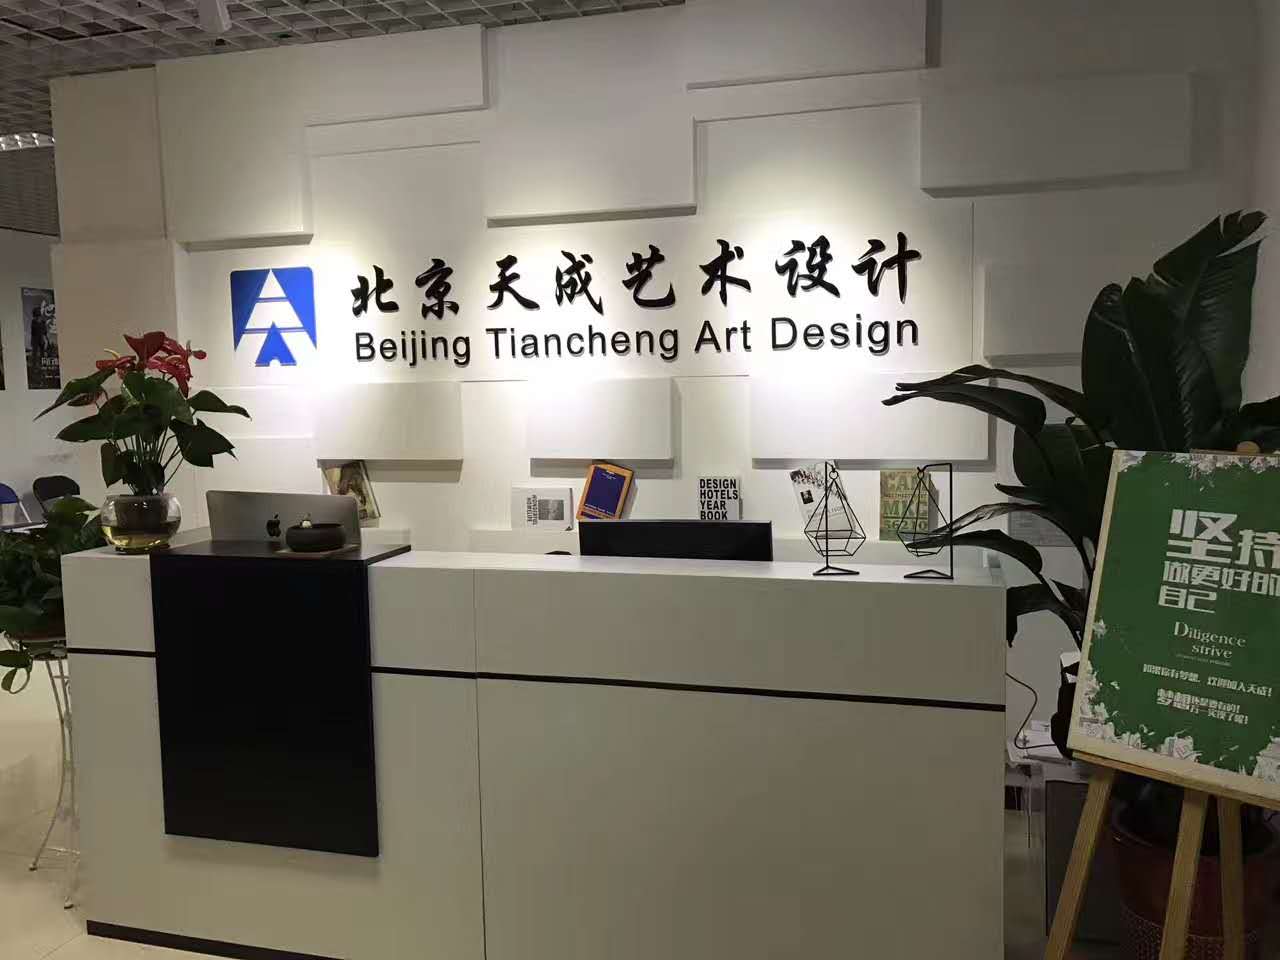 北京天成艺术设计